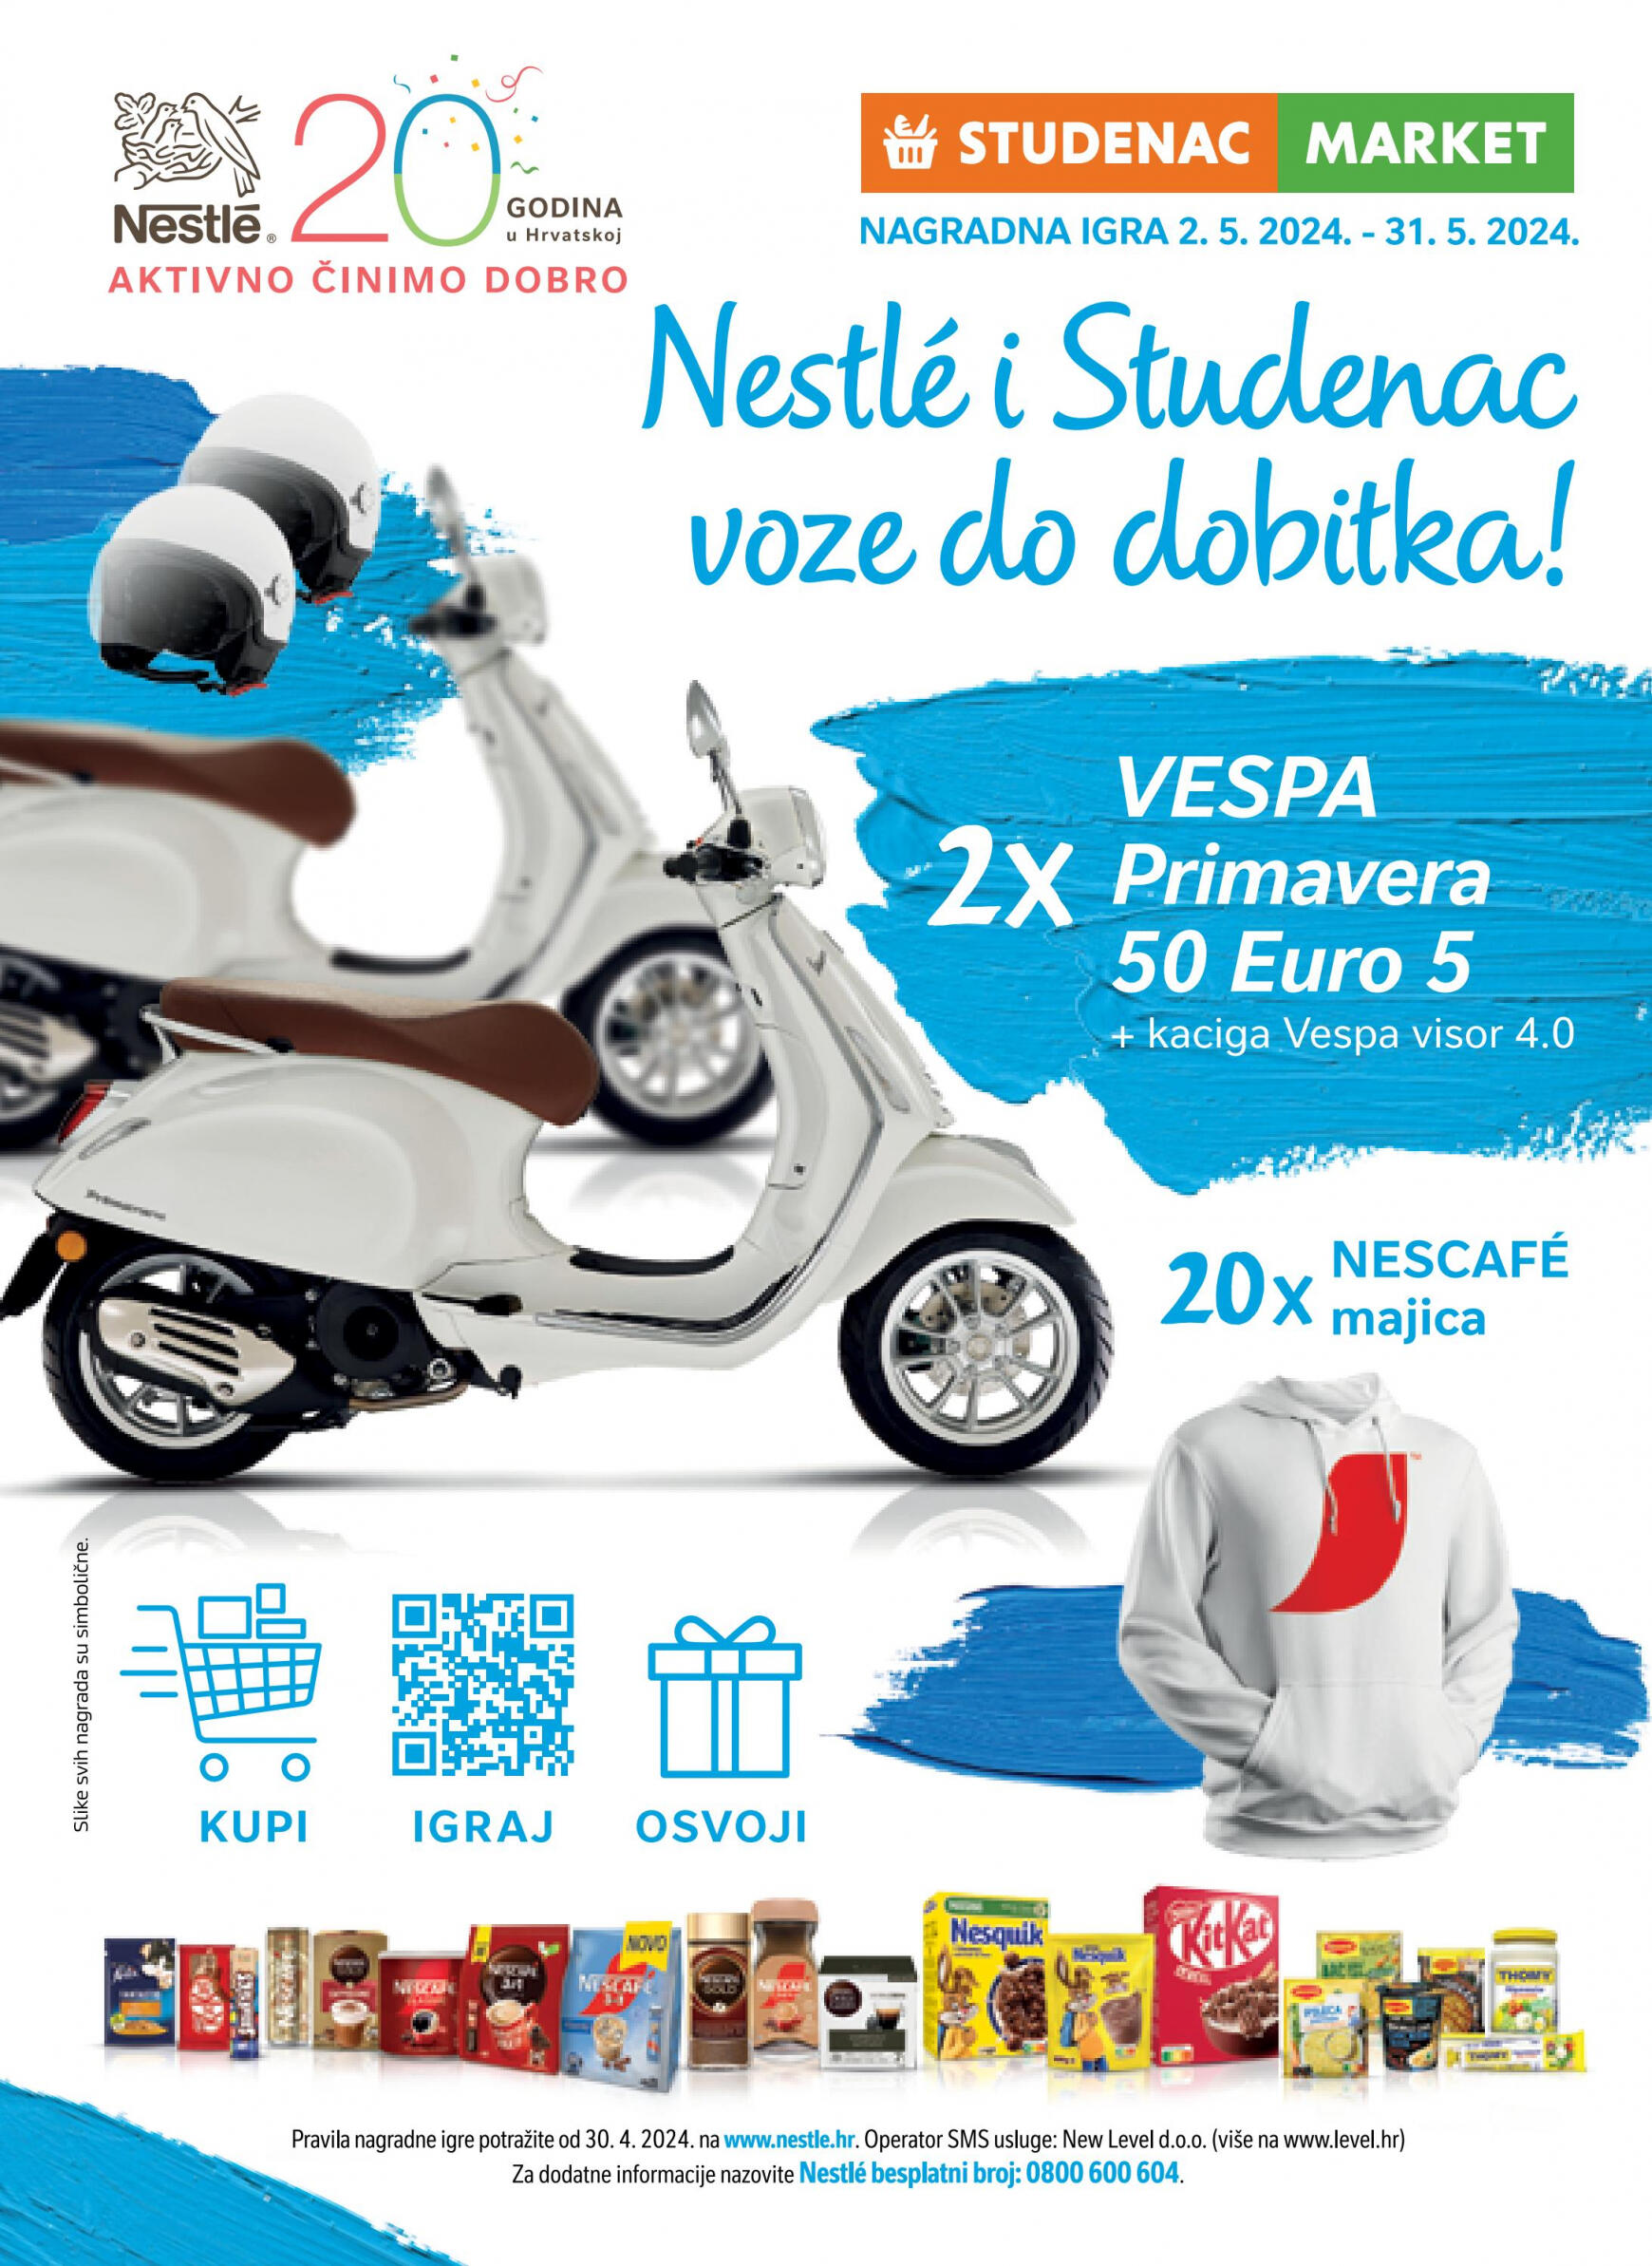 studenac - Novi katalog Studenac market 02.05. - 08.05. - page: 7